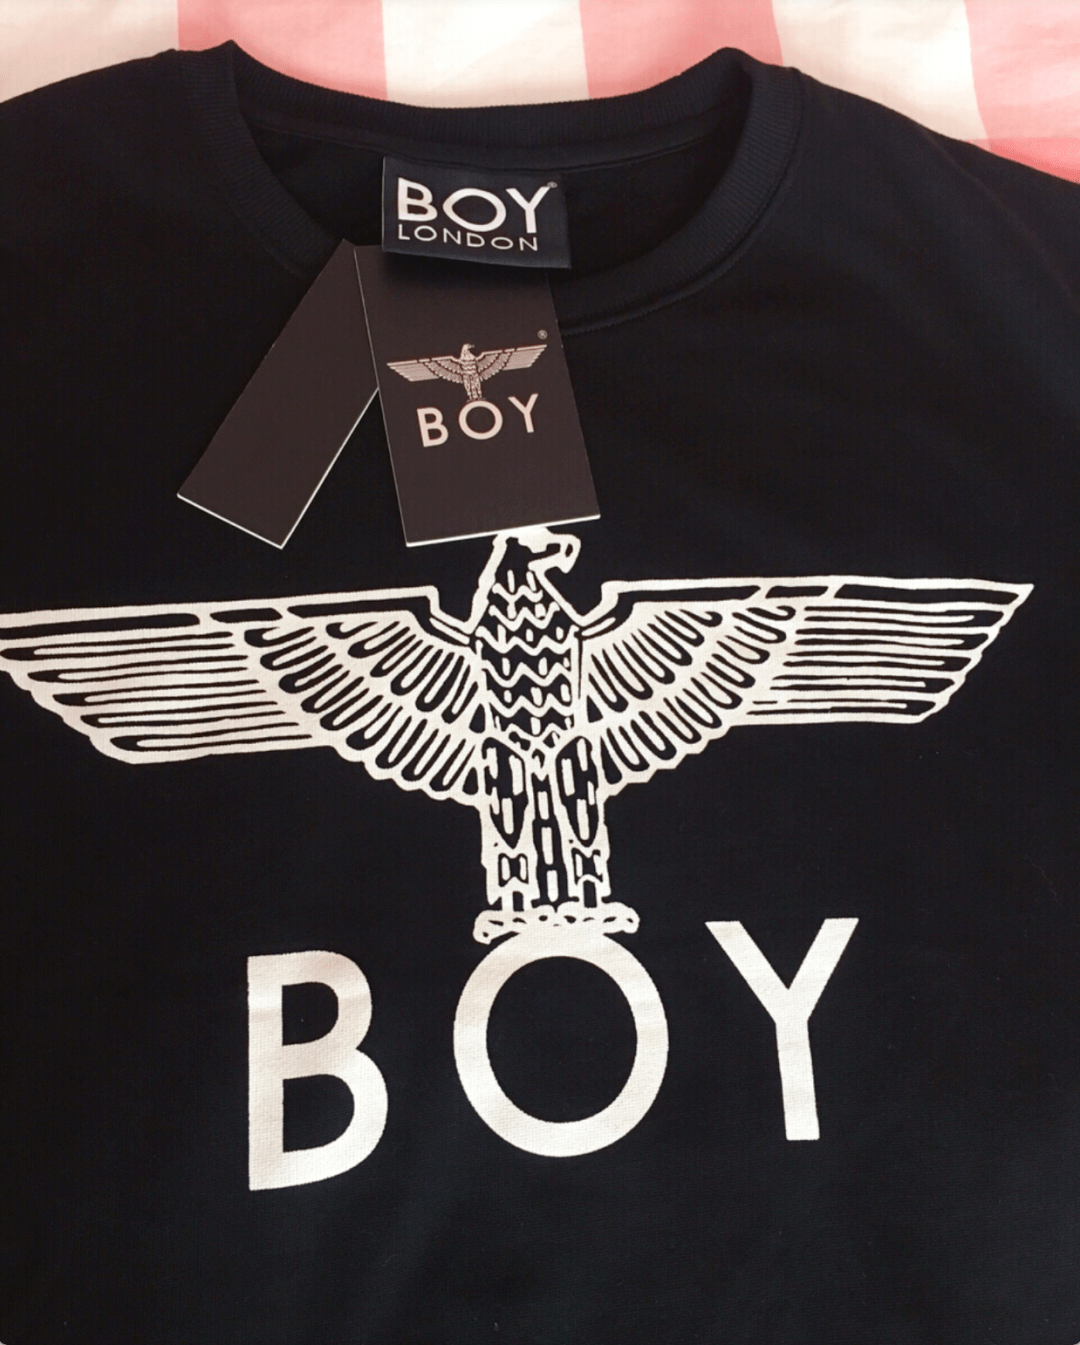 boy london 伦敦男孩 | 2021免税报价(12月服饰篇)